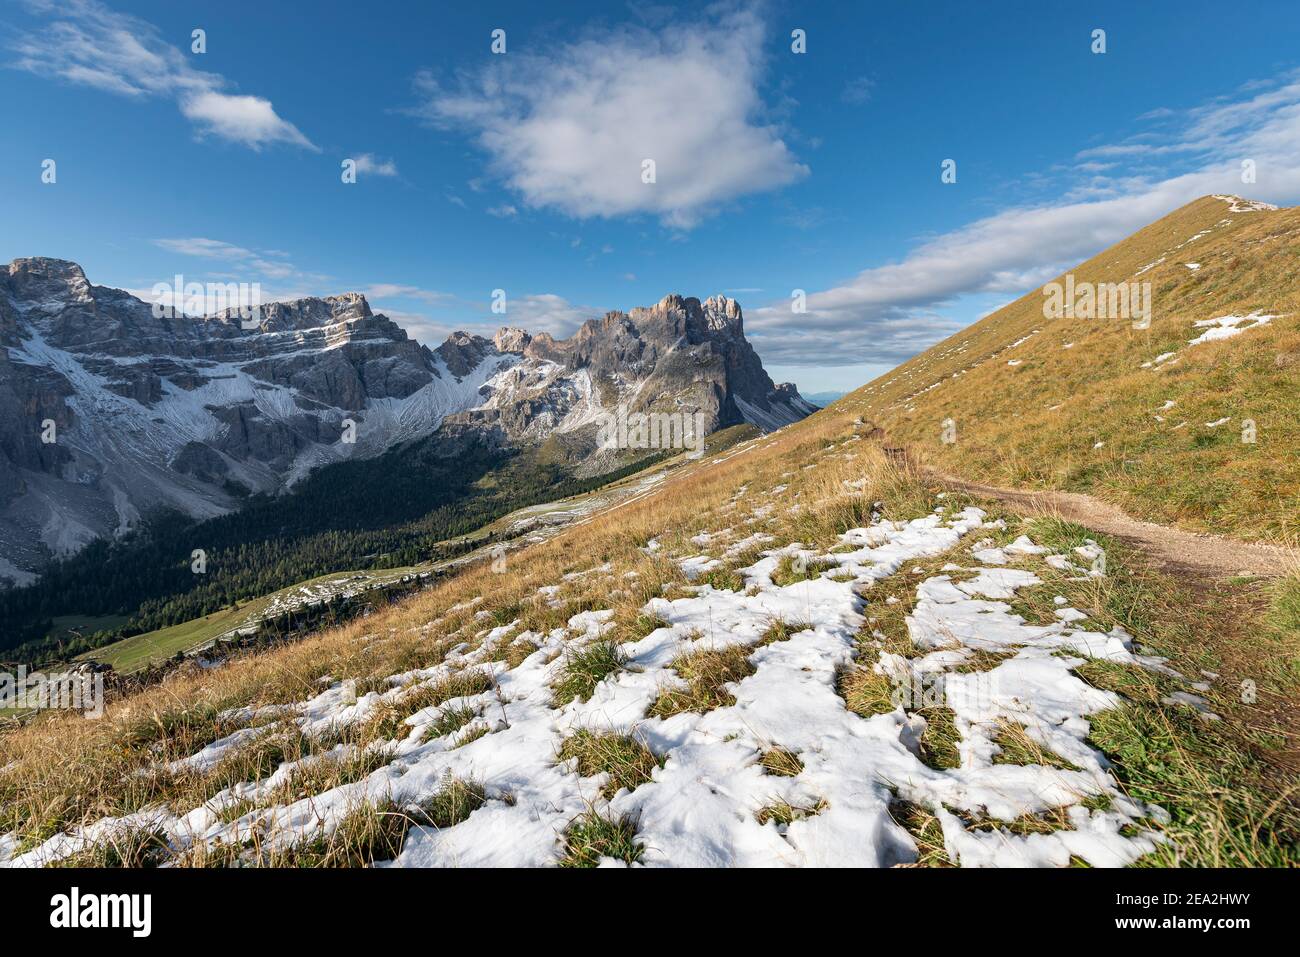 Sentier sur le paysage d'automne à Medalgesalm alp en face de dans les montagnes rocheuses Puez-Odle au soleil du matin, Dolomites, Tyrol du Sud, Italie Banque D'Images